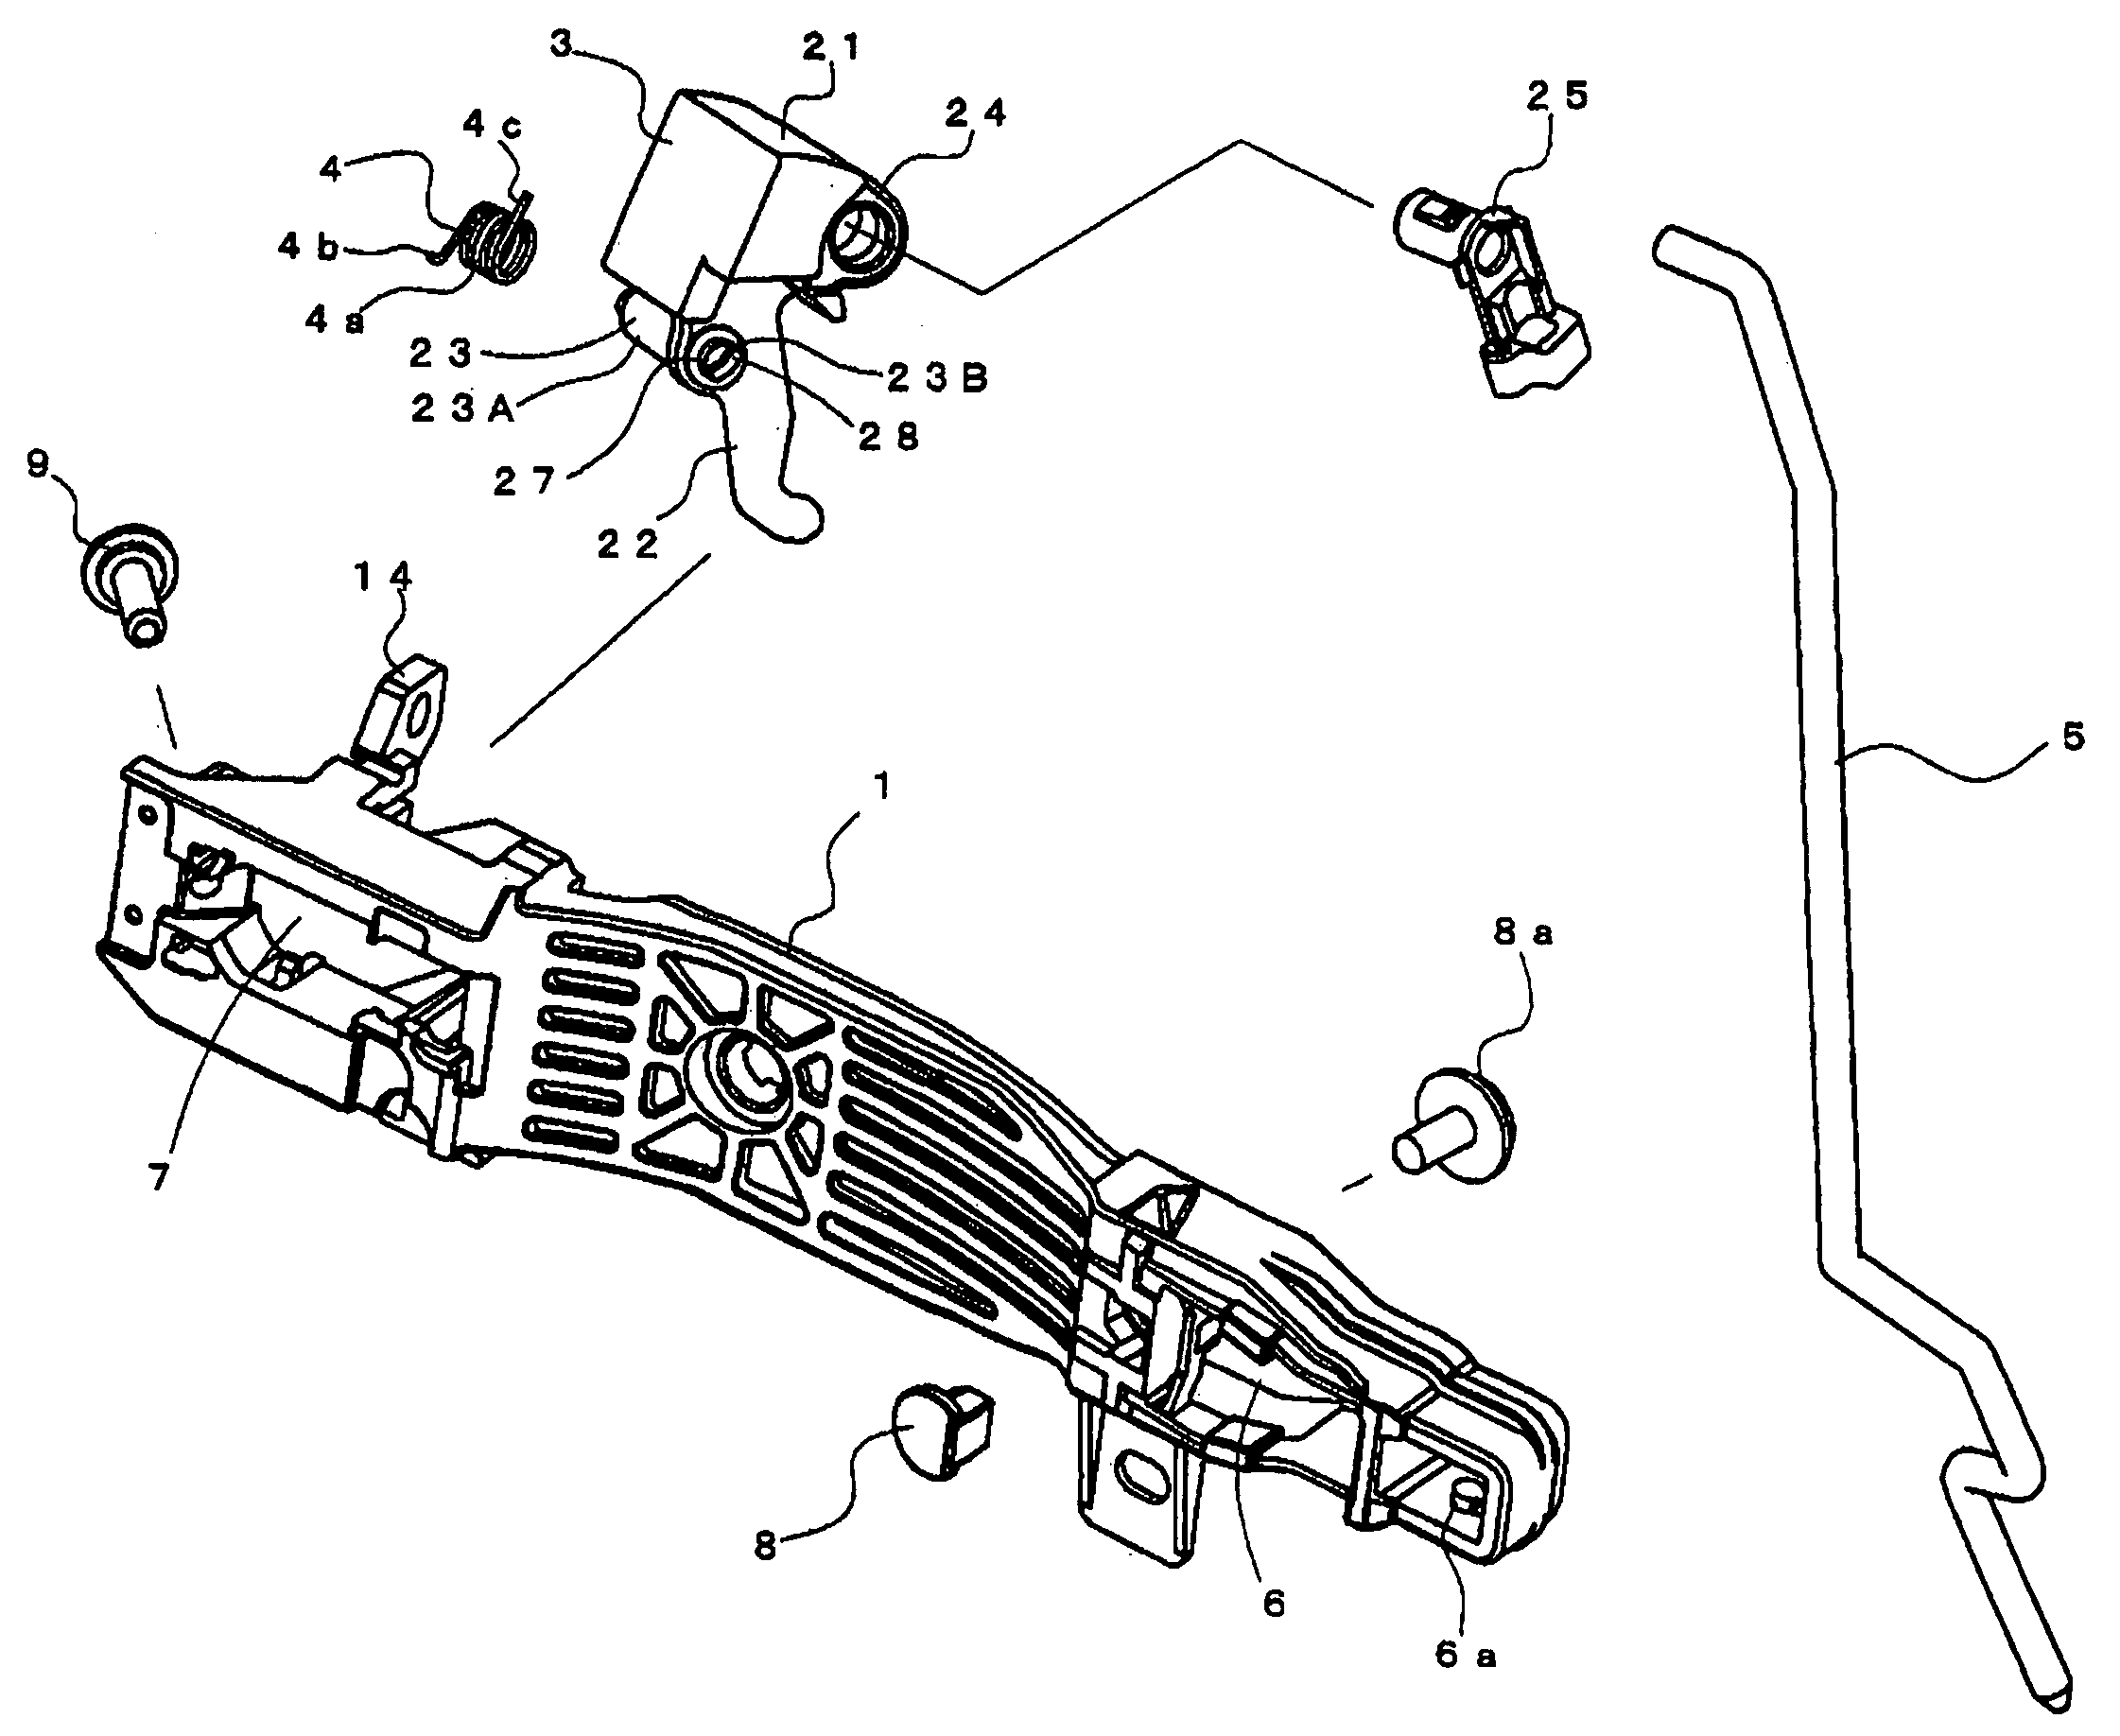 Vehicle door handle apparatus